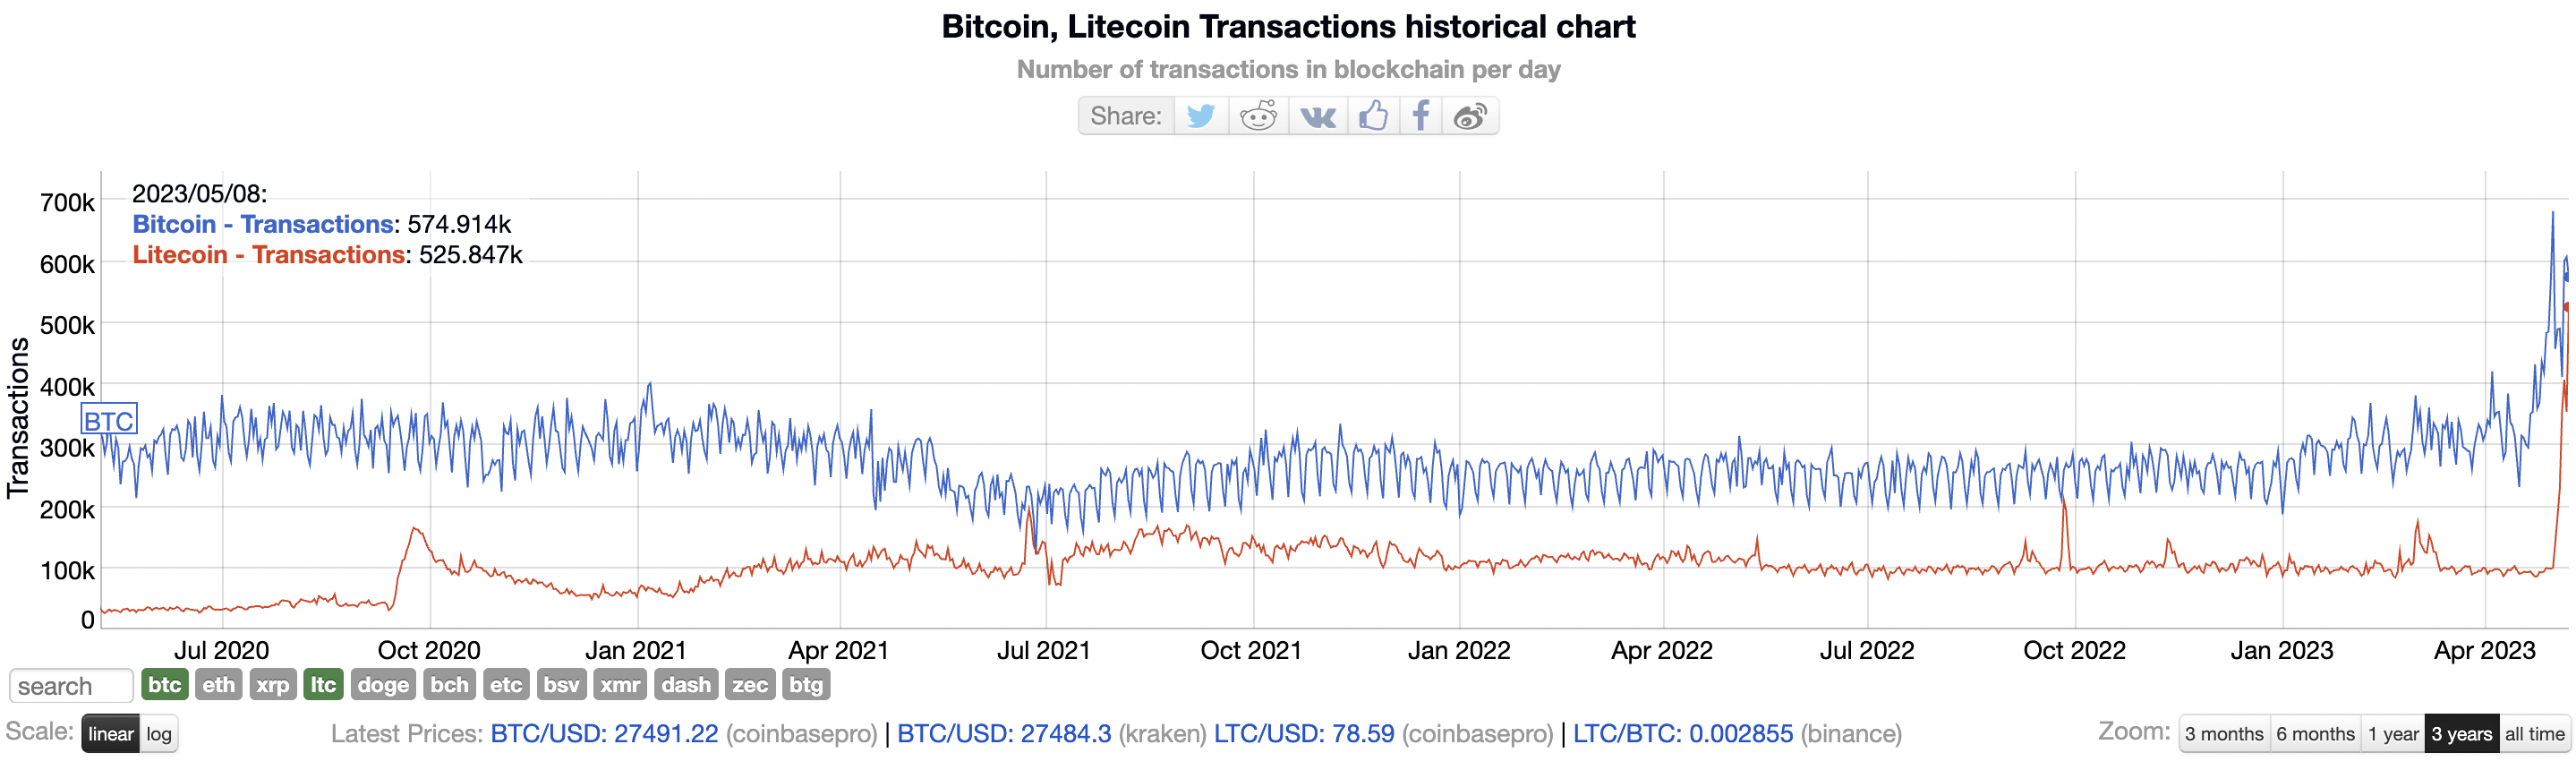 Giao dịch Litecoin đạt mức cao kỷ lục 